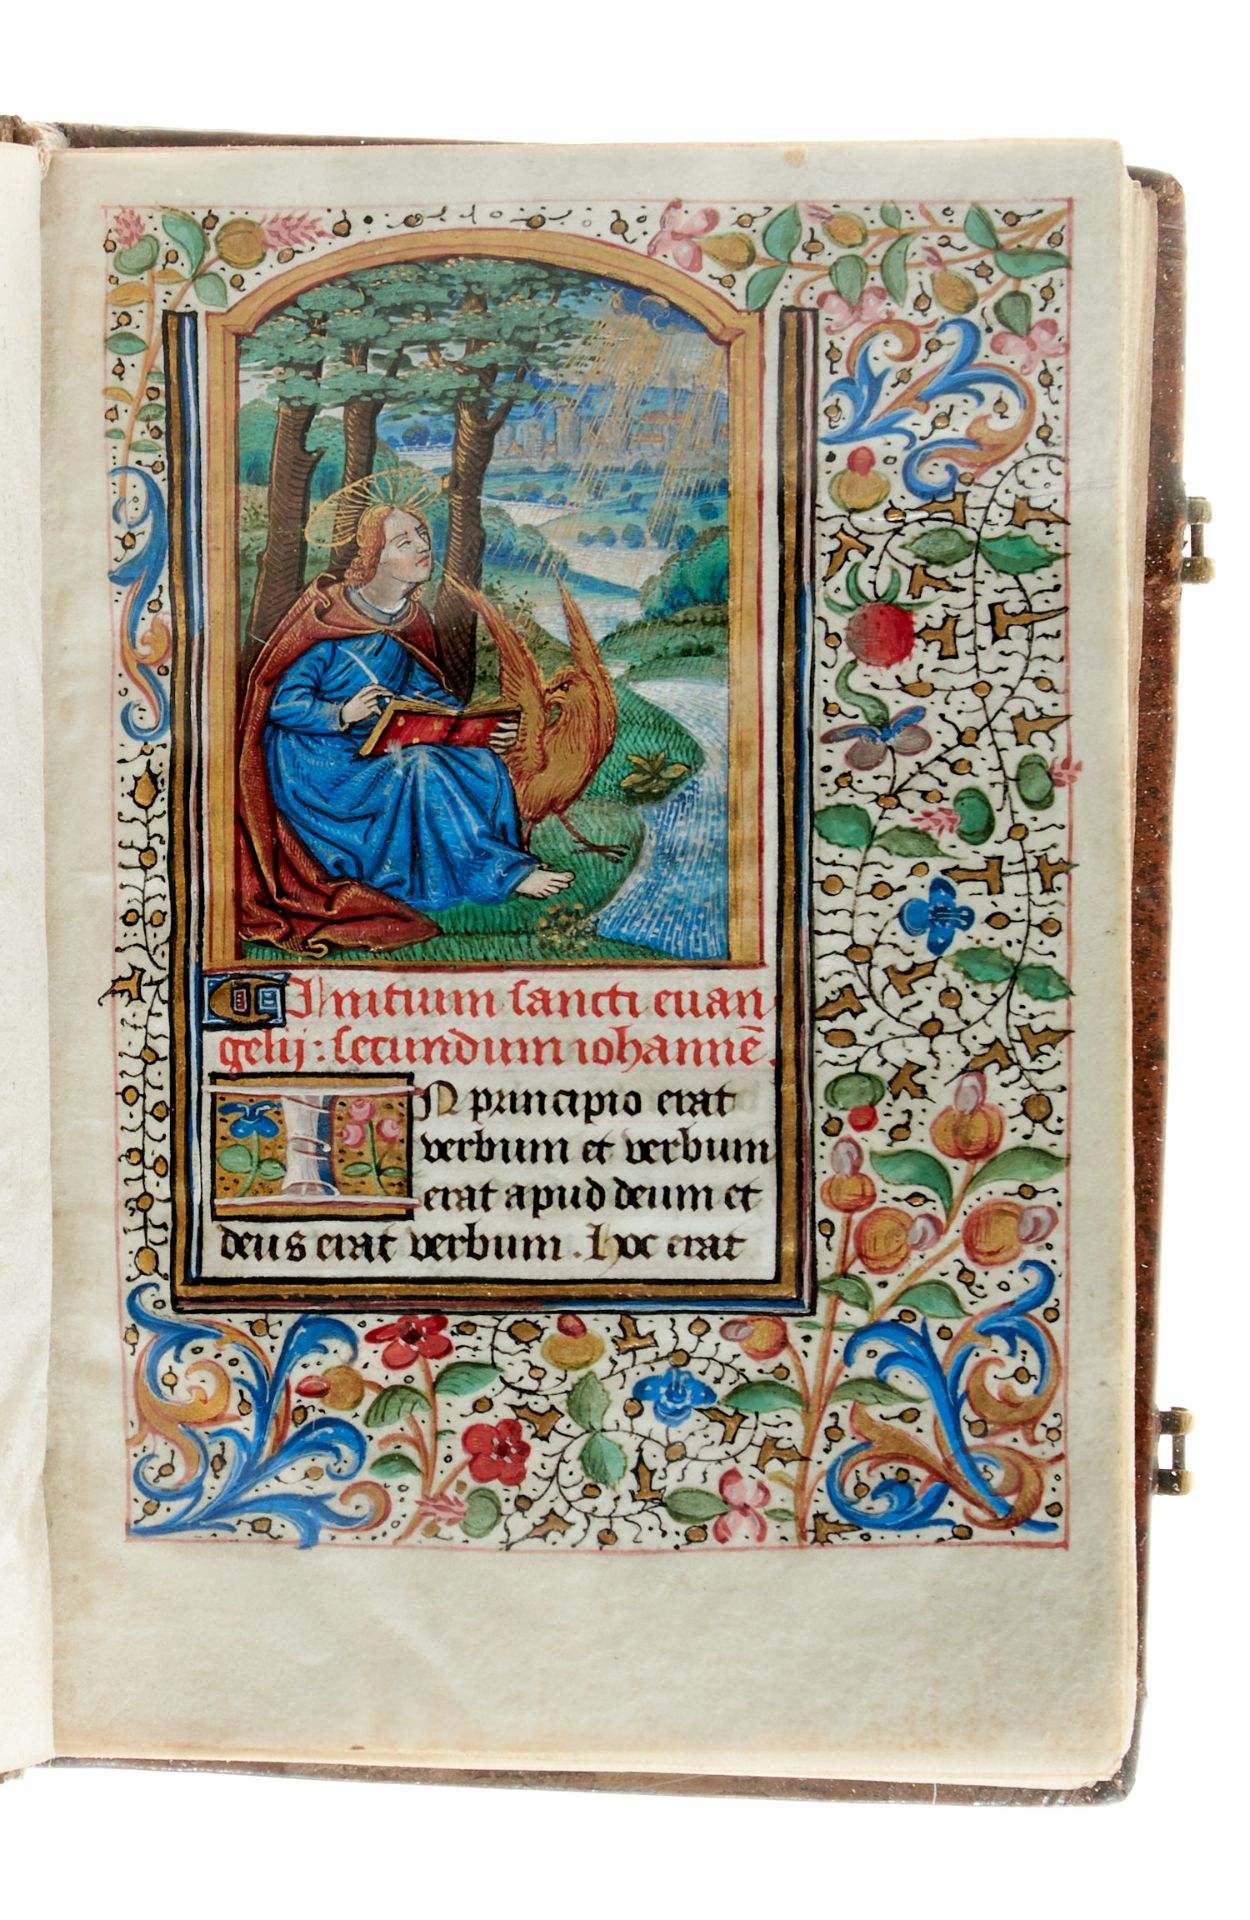 Pariser Stundenbuch. Lateinische Handschrift auf Pergament. Paris, um 1500. Ca. 14 x 10 cm. - Image 2 of 26